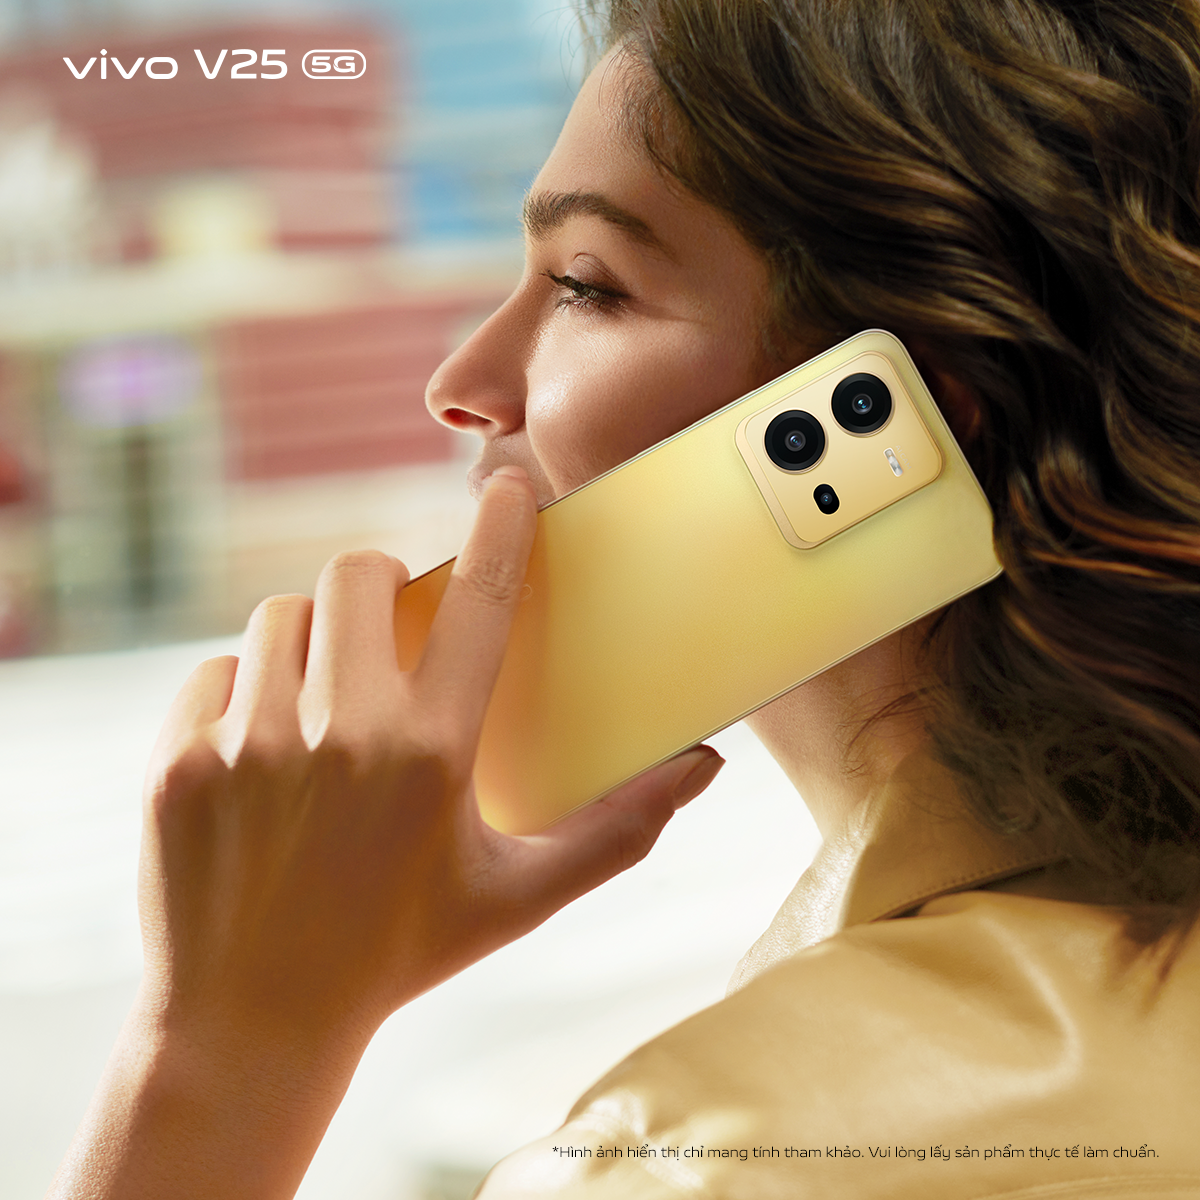 vivo ra mắt V25e và V25 5G: Bộ đôi smartphone với camera dẫn đầu xu hướng nhiếp ảnh, thiết kế chuyển sắc độc đáo cùng hiệu suất mạnh mẽ